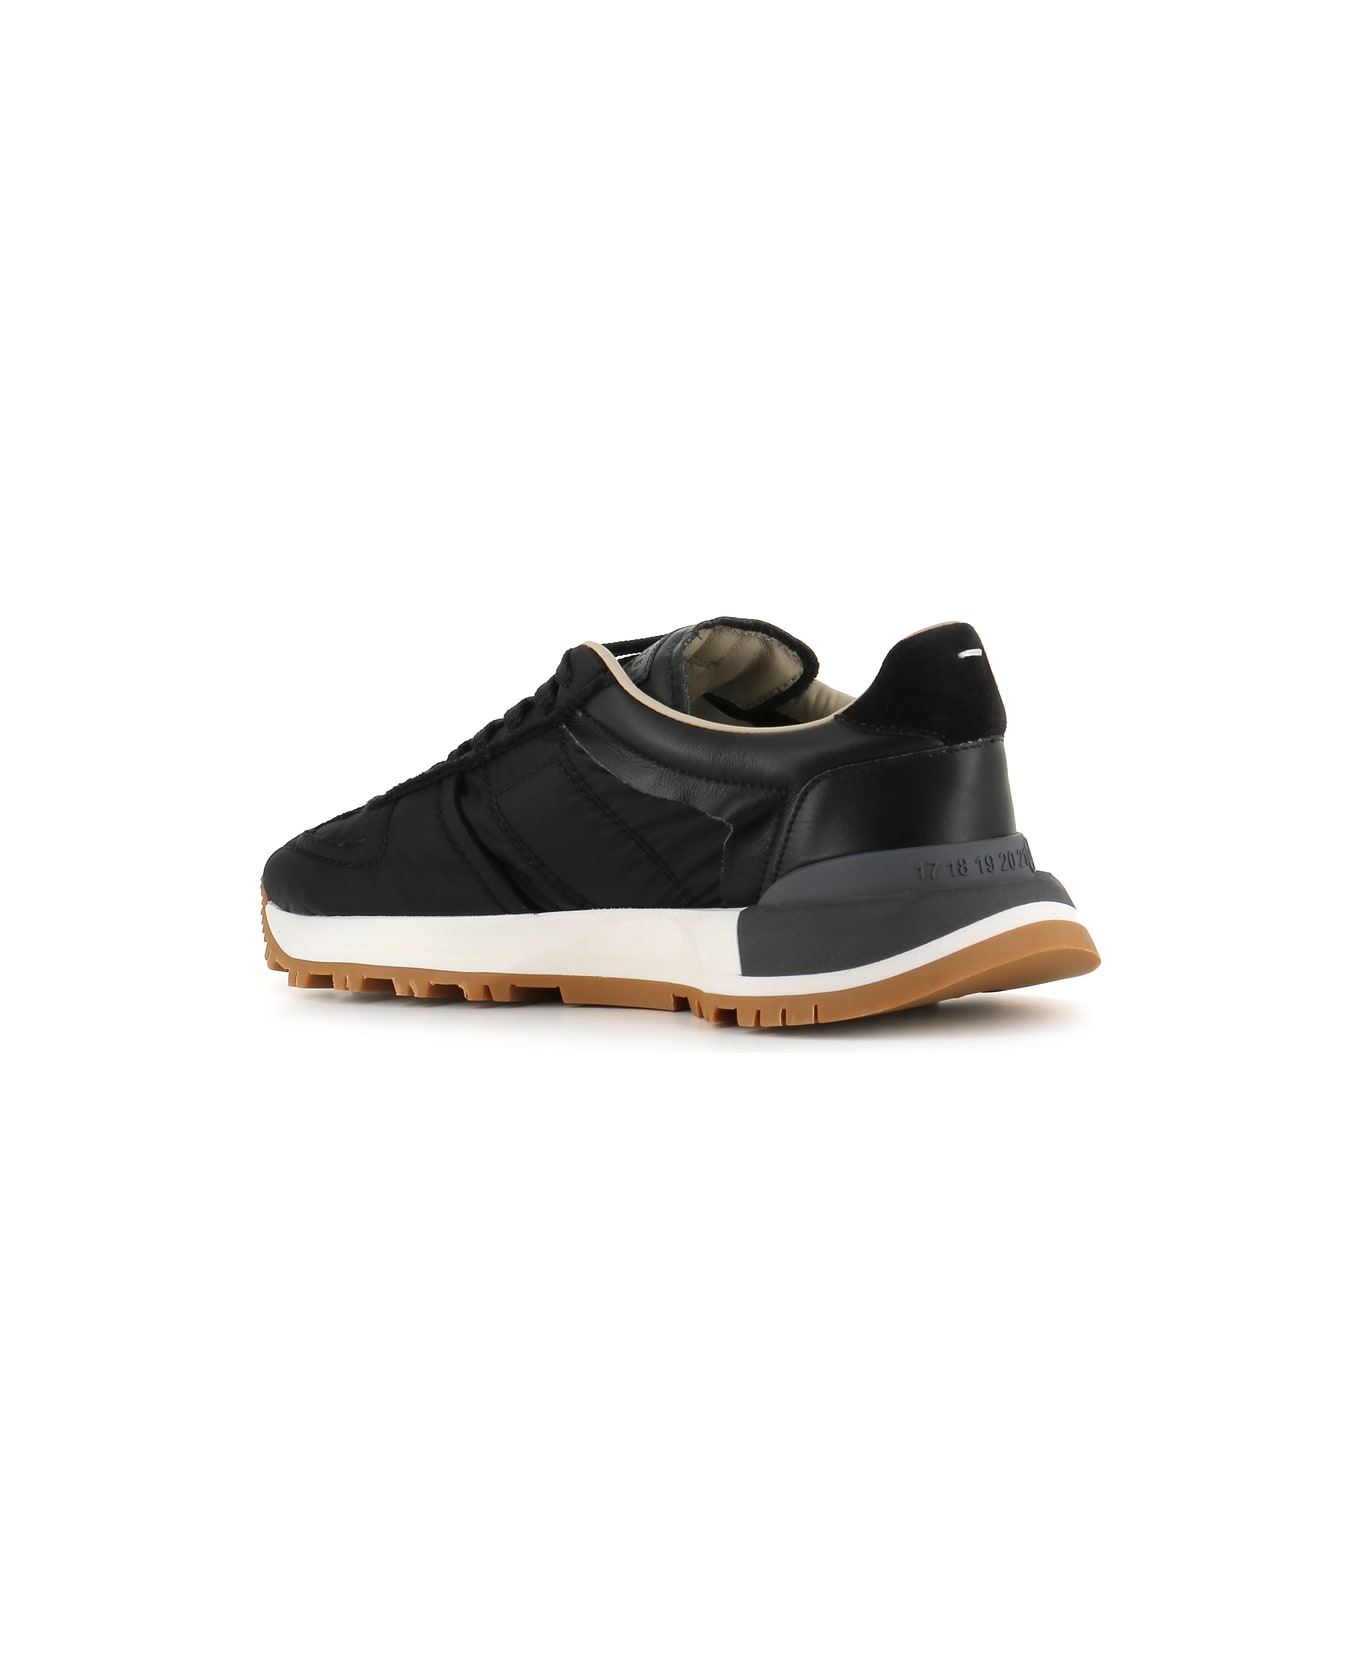 Maison Margiela Sneakers - Black スニーカー